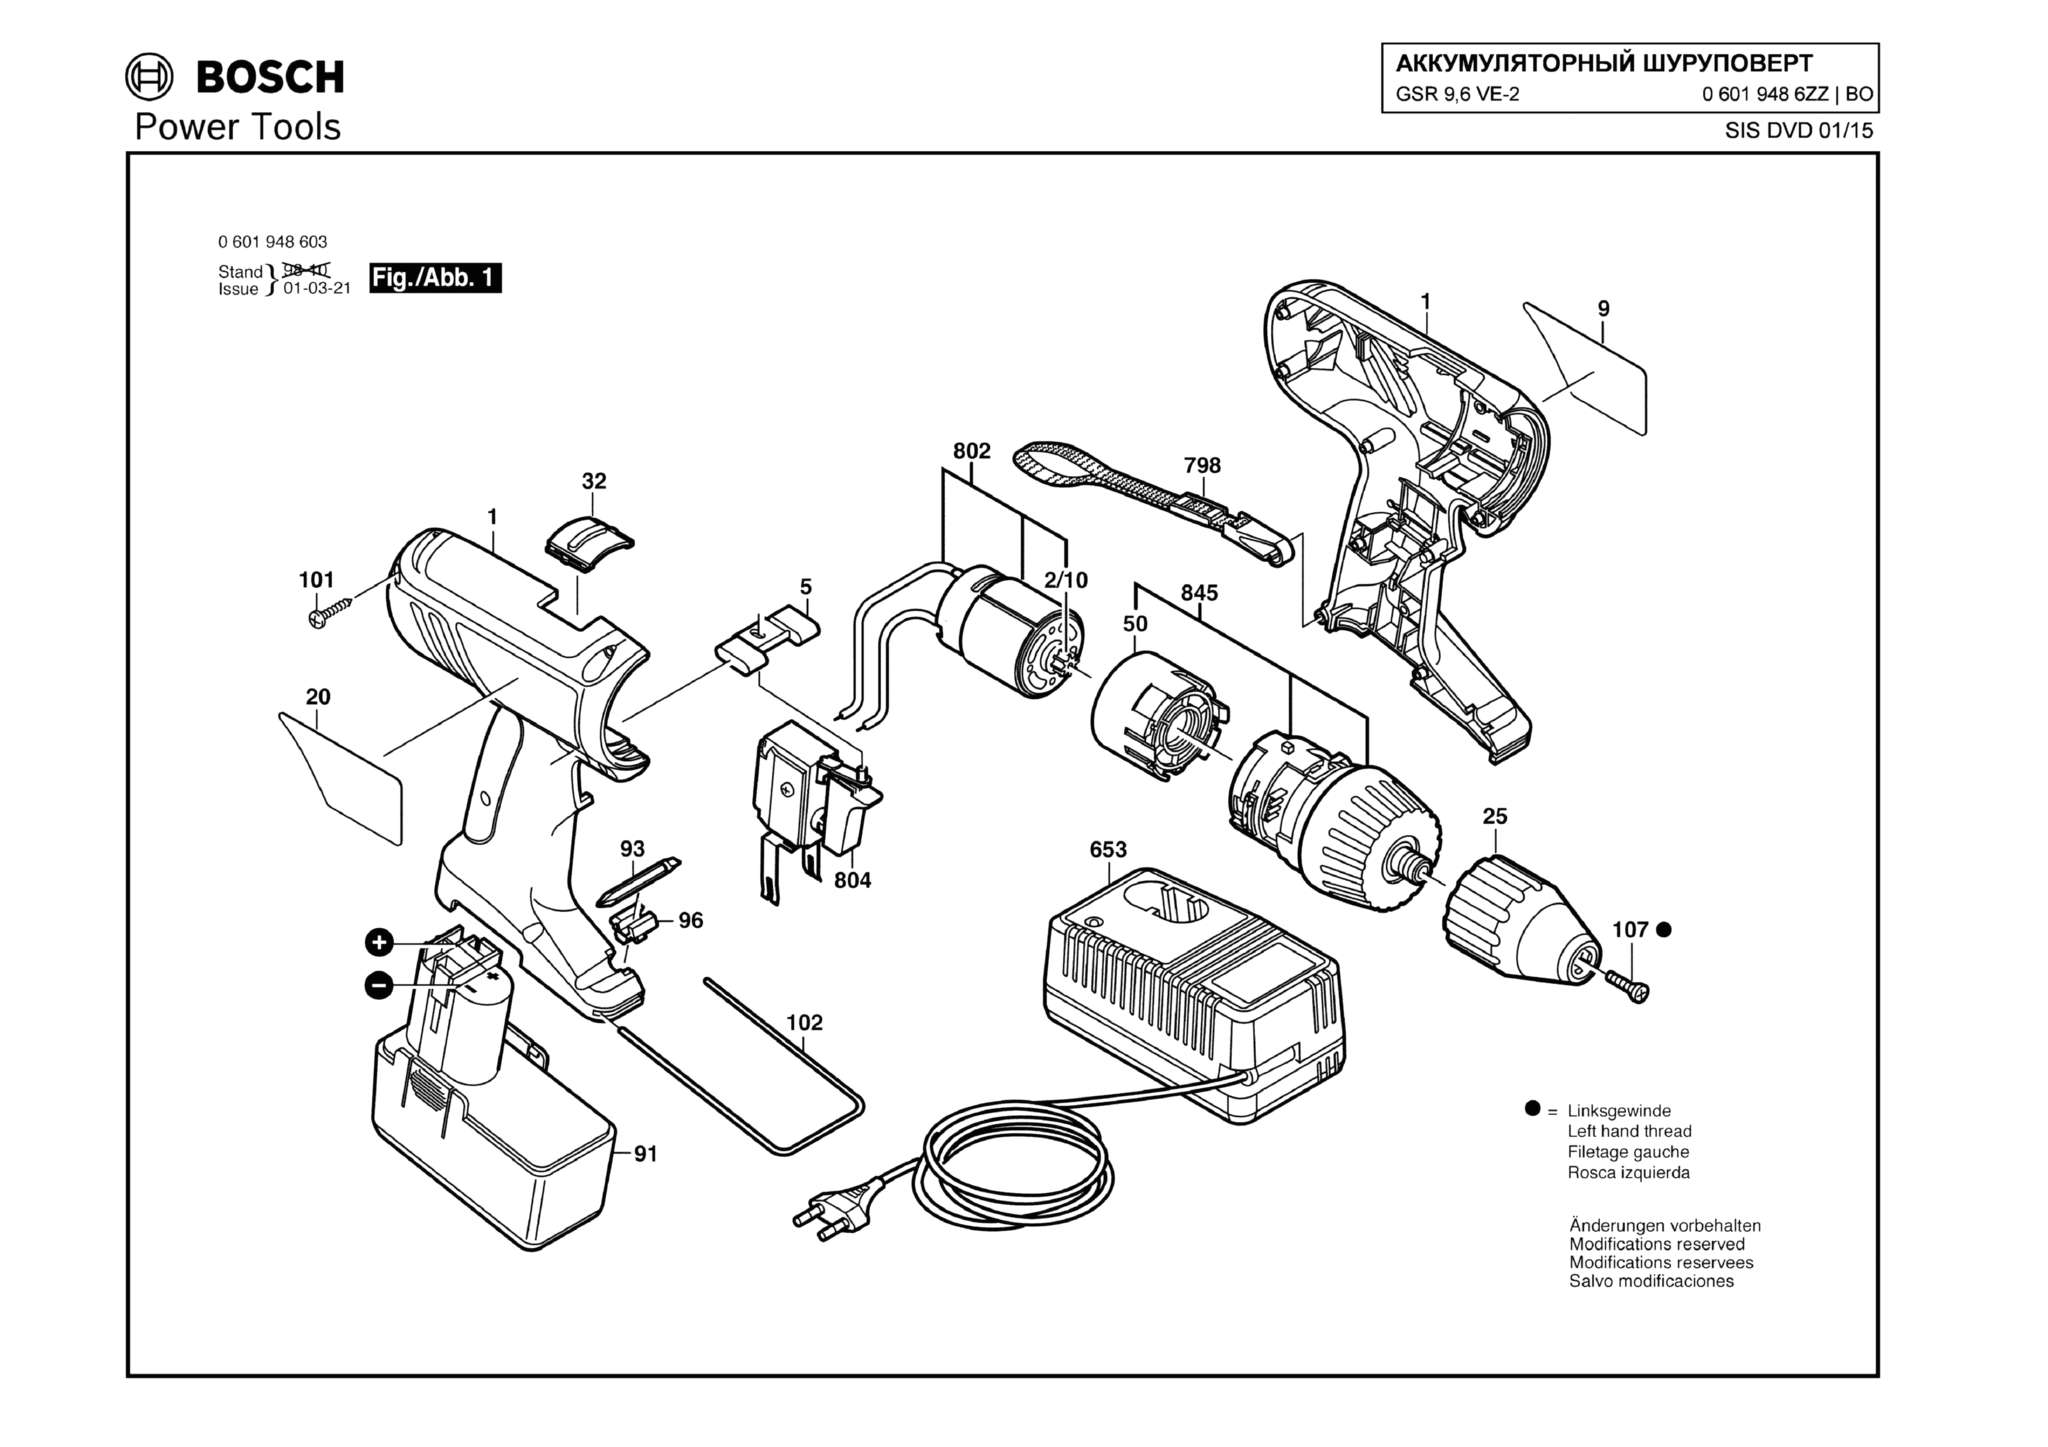 Запчасти, схема и деталировка Bosch GSR 9,6 VE-2 (ТИП 06019486ZZ)